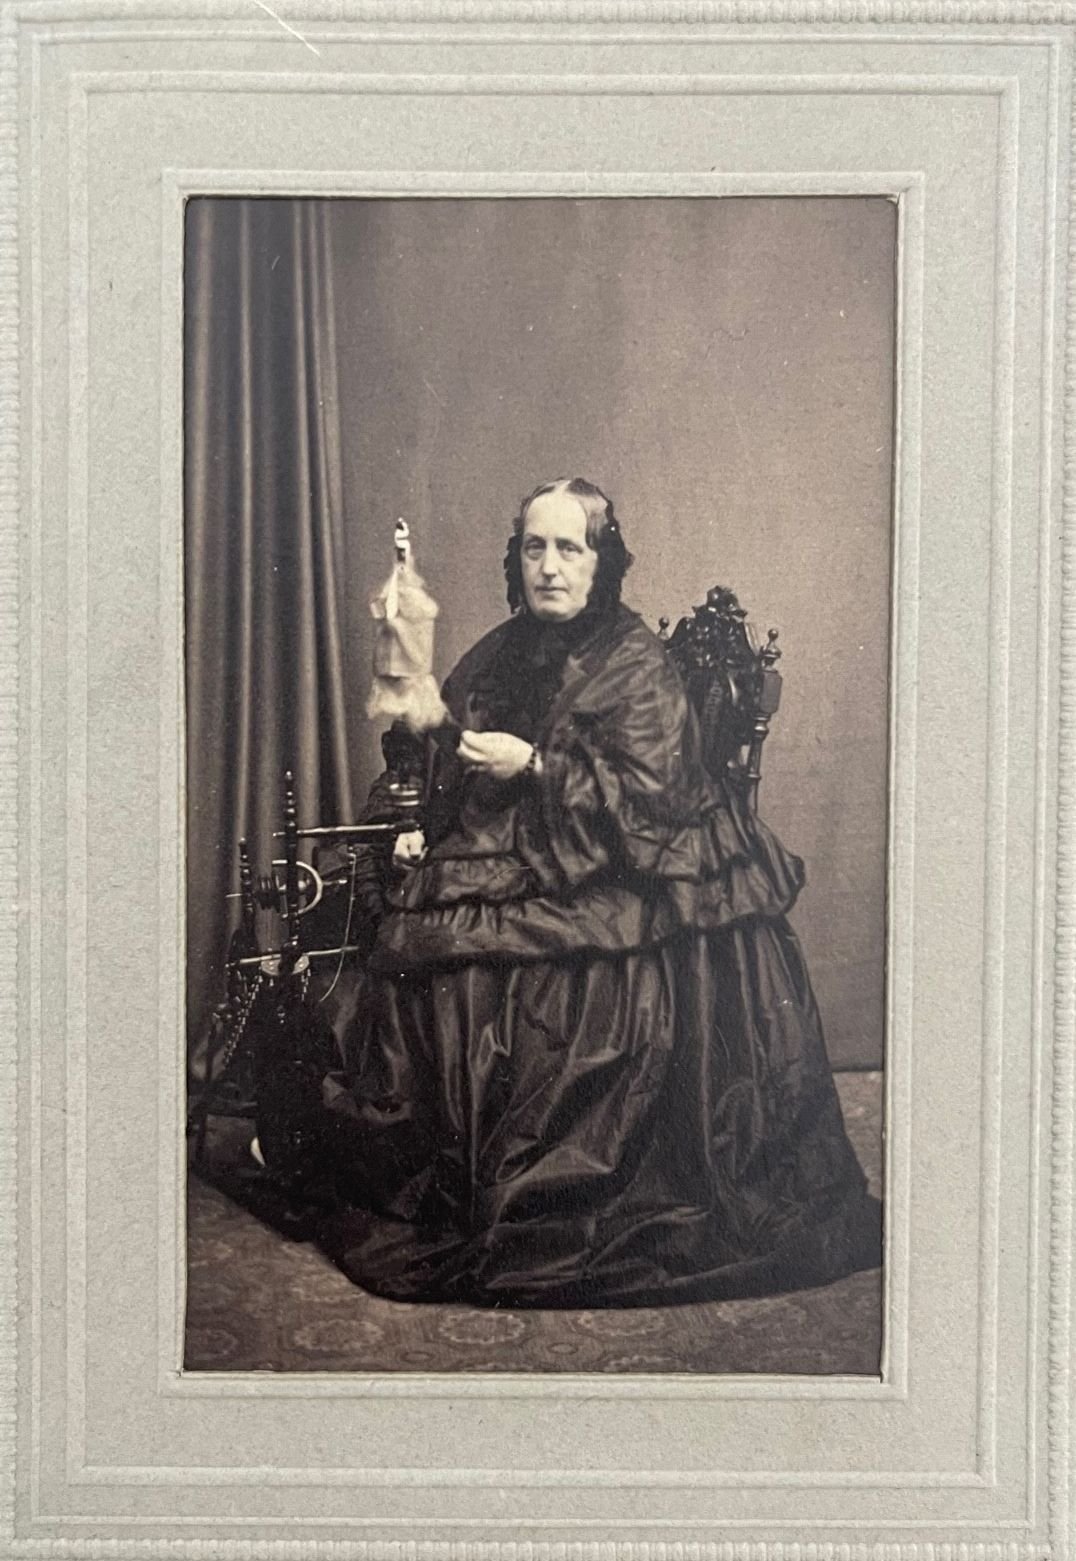 Fotografie, Jacob Seib, Luitgarde Fürstin zu Solms-Laubach, geborene Prinzessin zu Wied, ca. 1865. (Taunus-Rhein-Main - Regionalgeschichtliche Sammlung Dr. Stefan Naas CC BY-NC-SA)